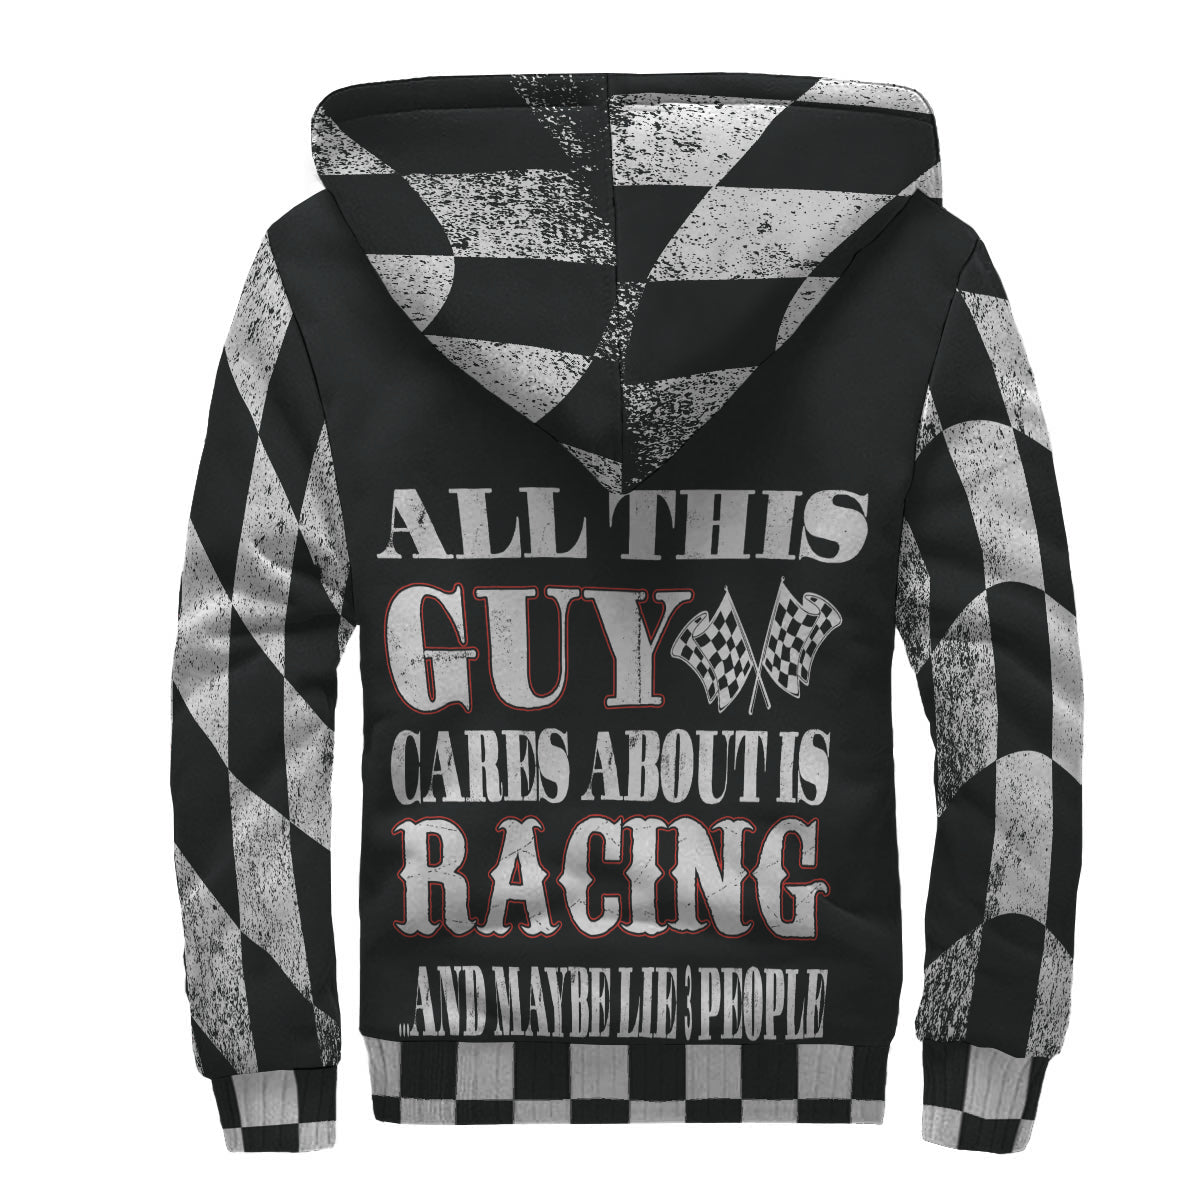 racing men's jacket